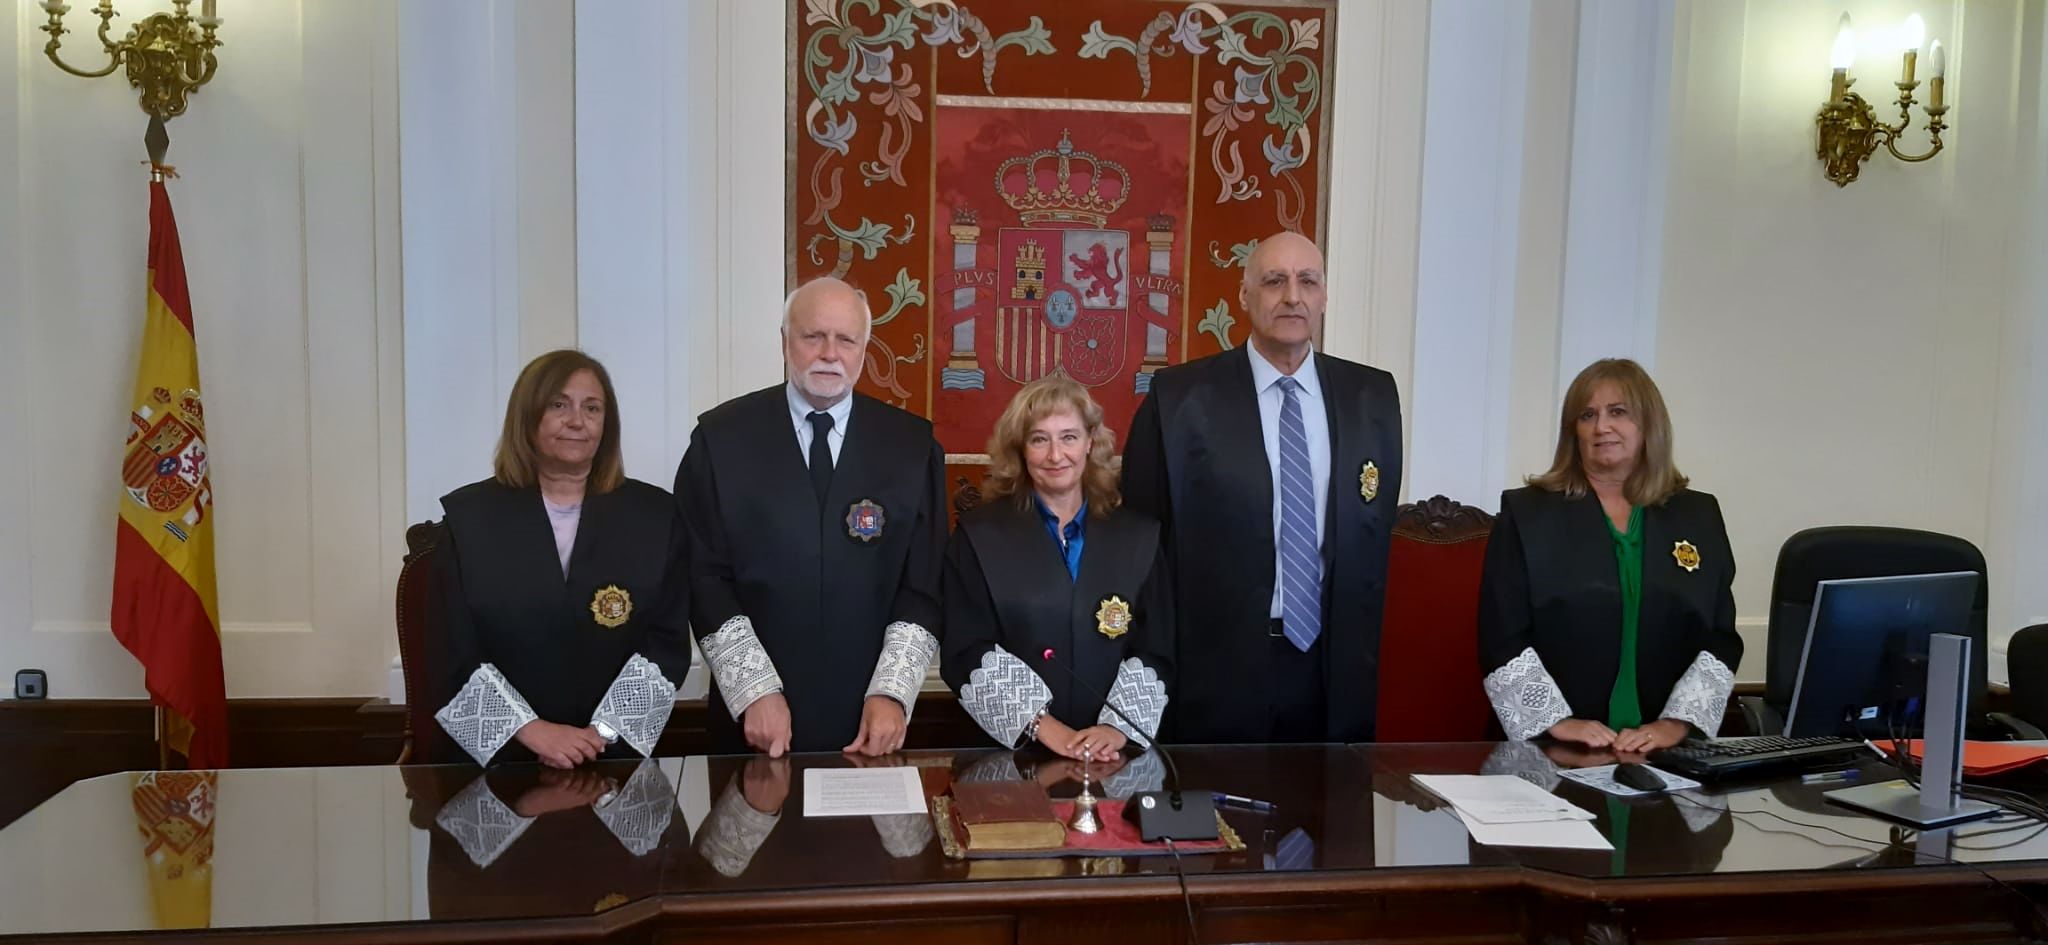 De izquierda a derecha: Isabel Morán (fiscal jefa provincial), Alberto Álvarez (presidente Sección 2ª AP León), Ana del Ser (presidenta AP León), Carlos Miguélez (presidente Sección 3ª AP León), Ana Gómez Villaboa (LAJ AP León).